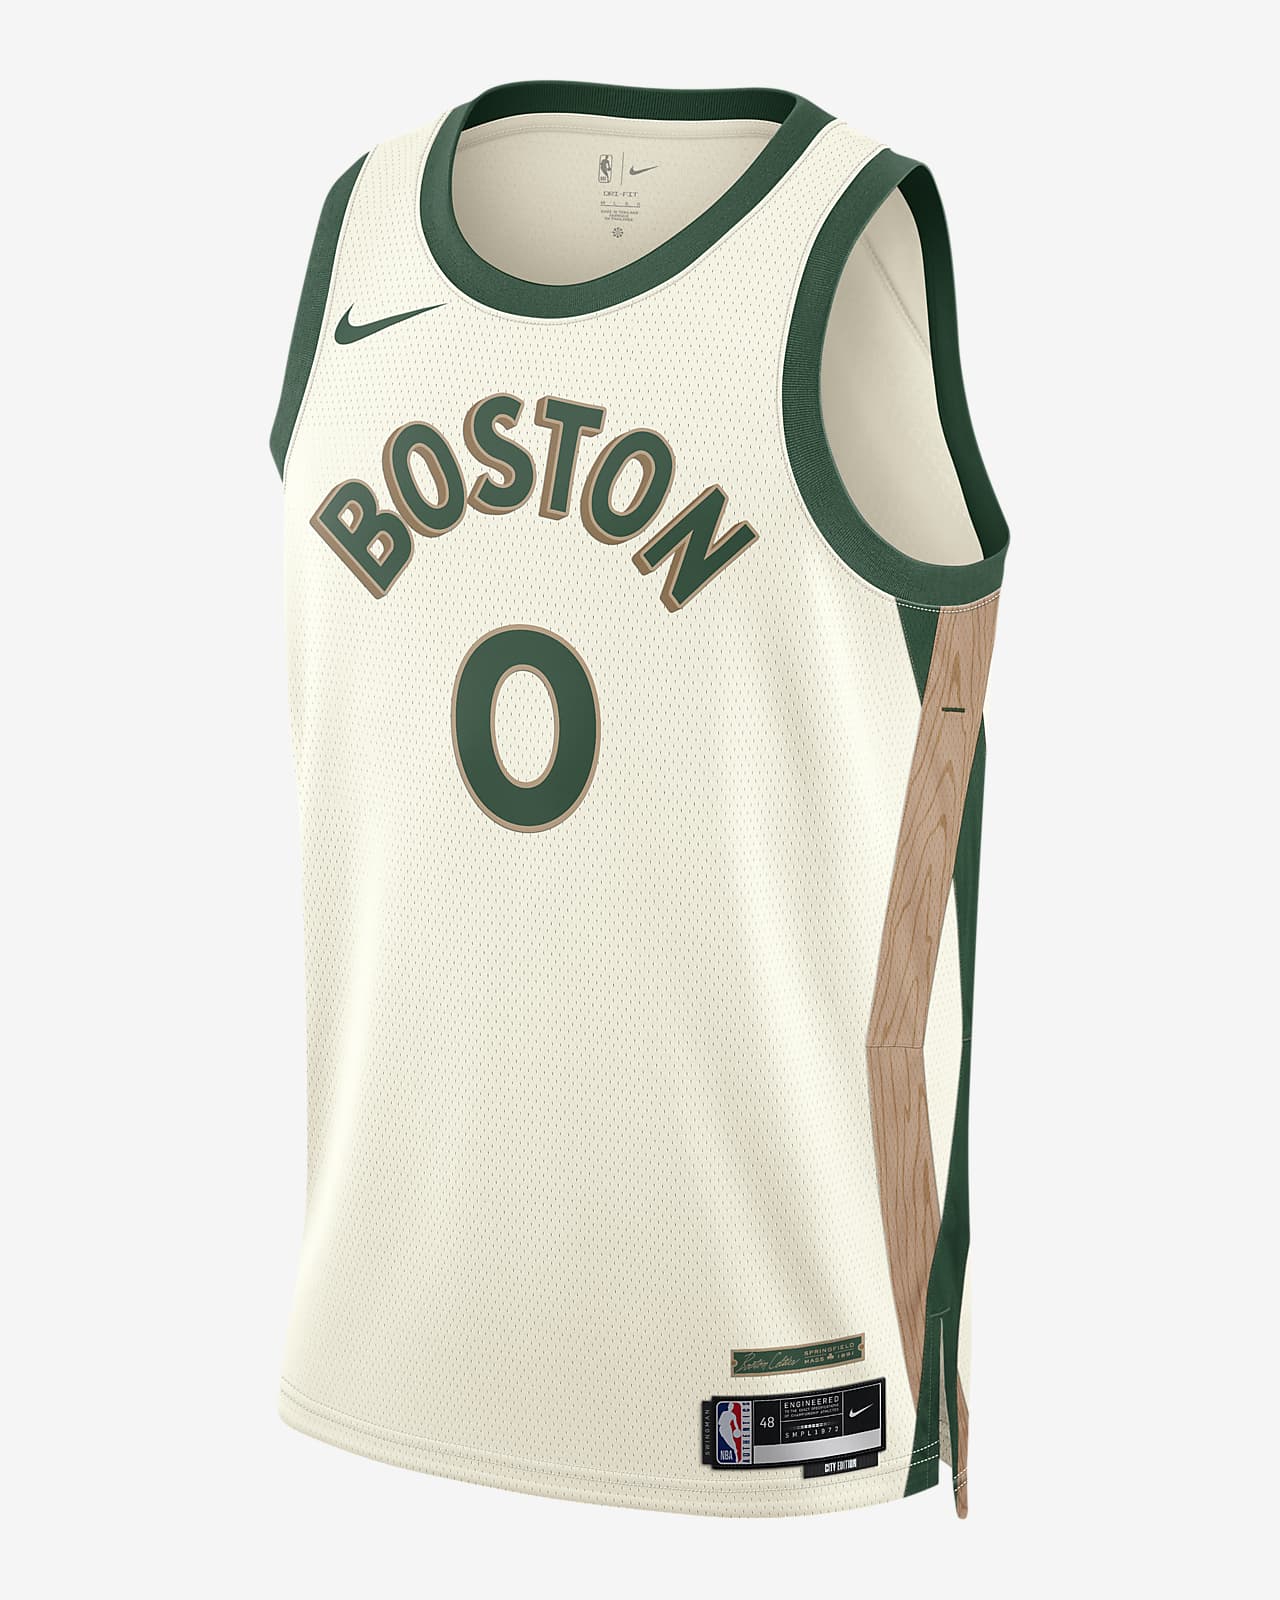 2023/24 赛季波士顿凯尔特人队 (Jayson Tatum) City Edition Nike Dri-FIT NBA Swingman Jersey 男子速干球衣